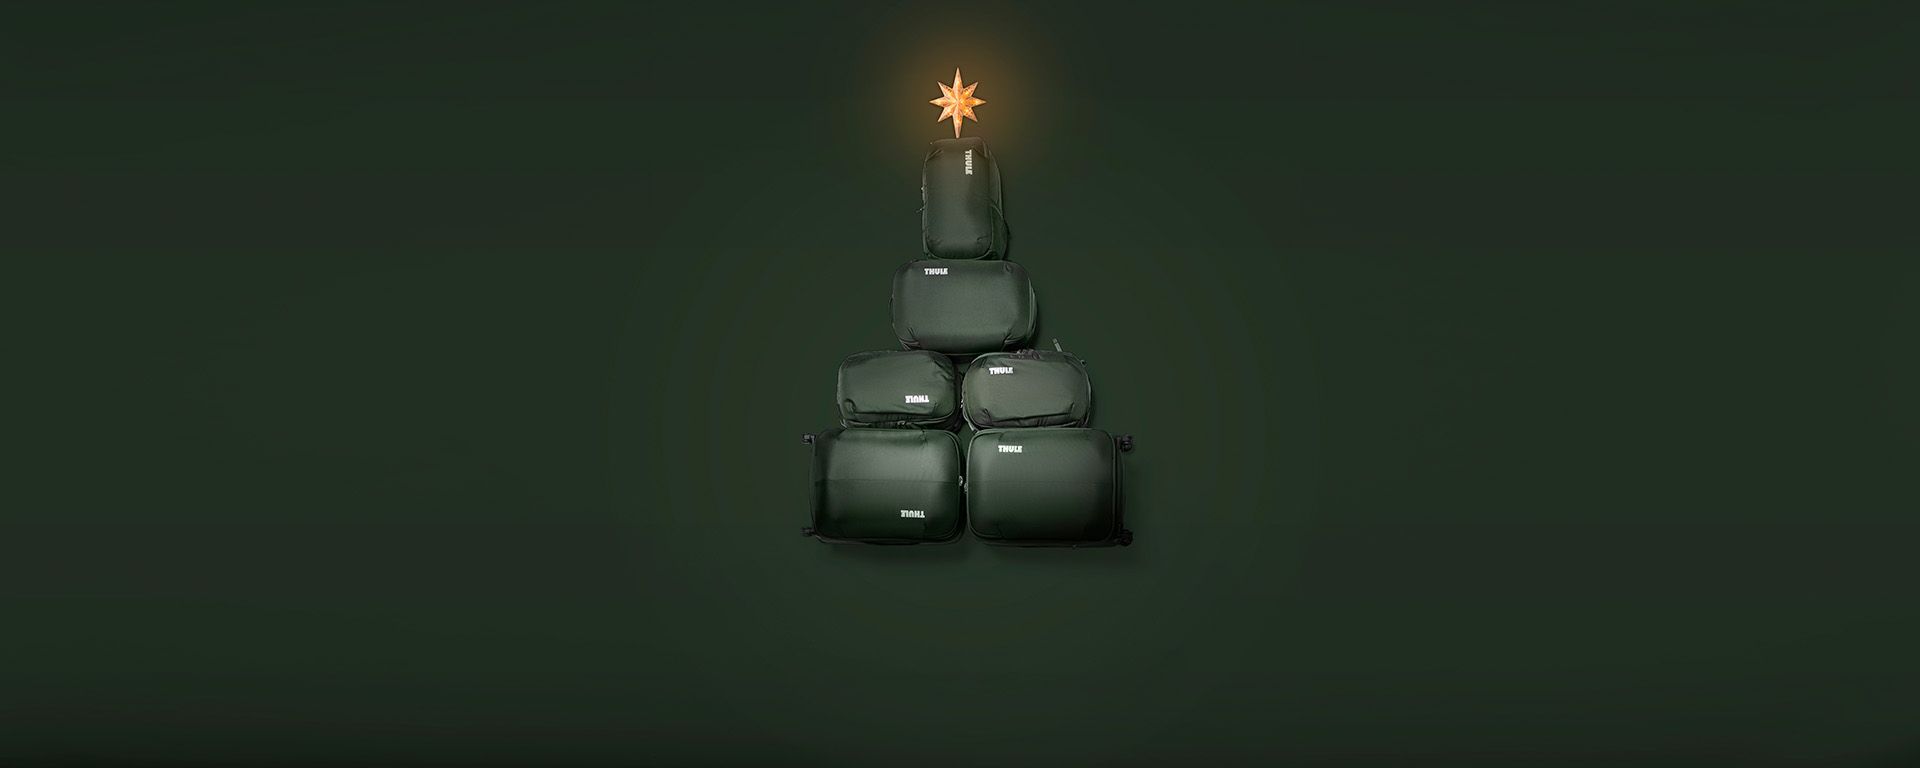 Fire grønne Thule Chasm-saccosekker er stablet høyt med en stjerne på toppen som et juletre.